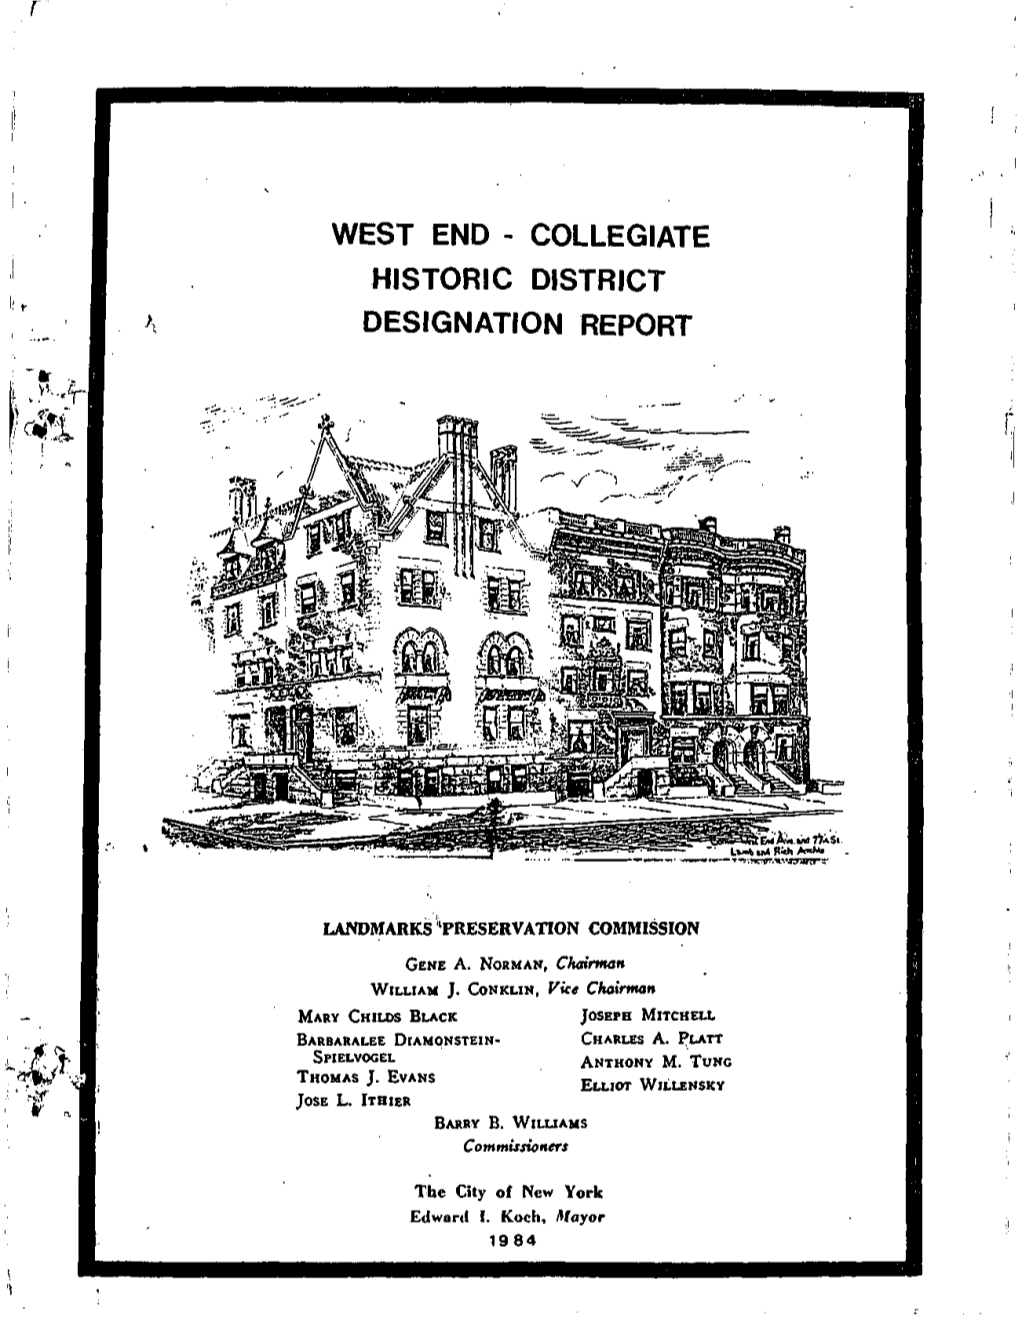 West End - Collegiate Historic District Designation Report